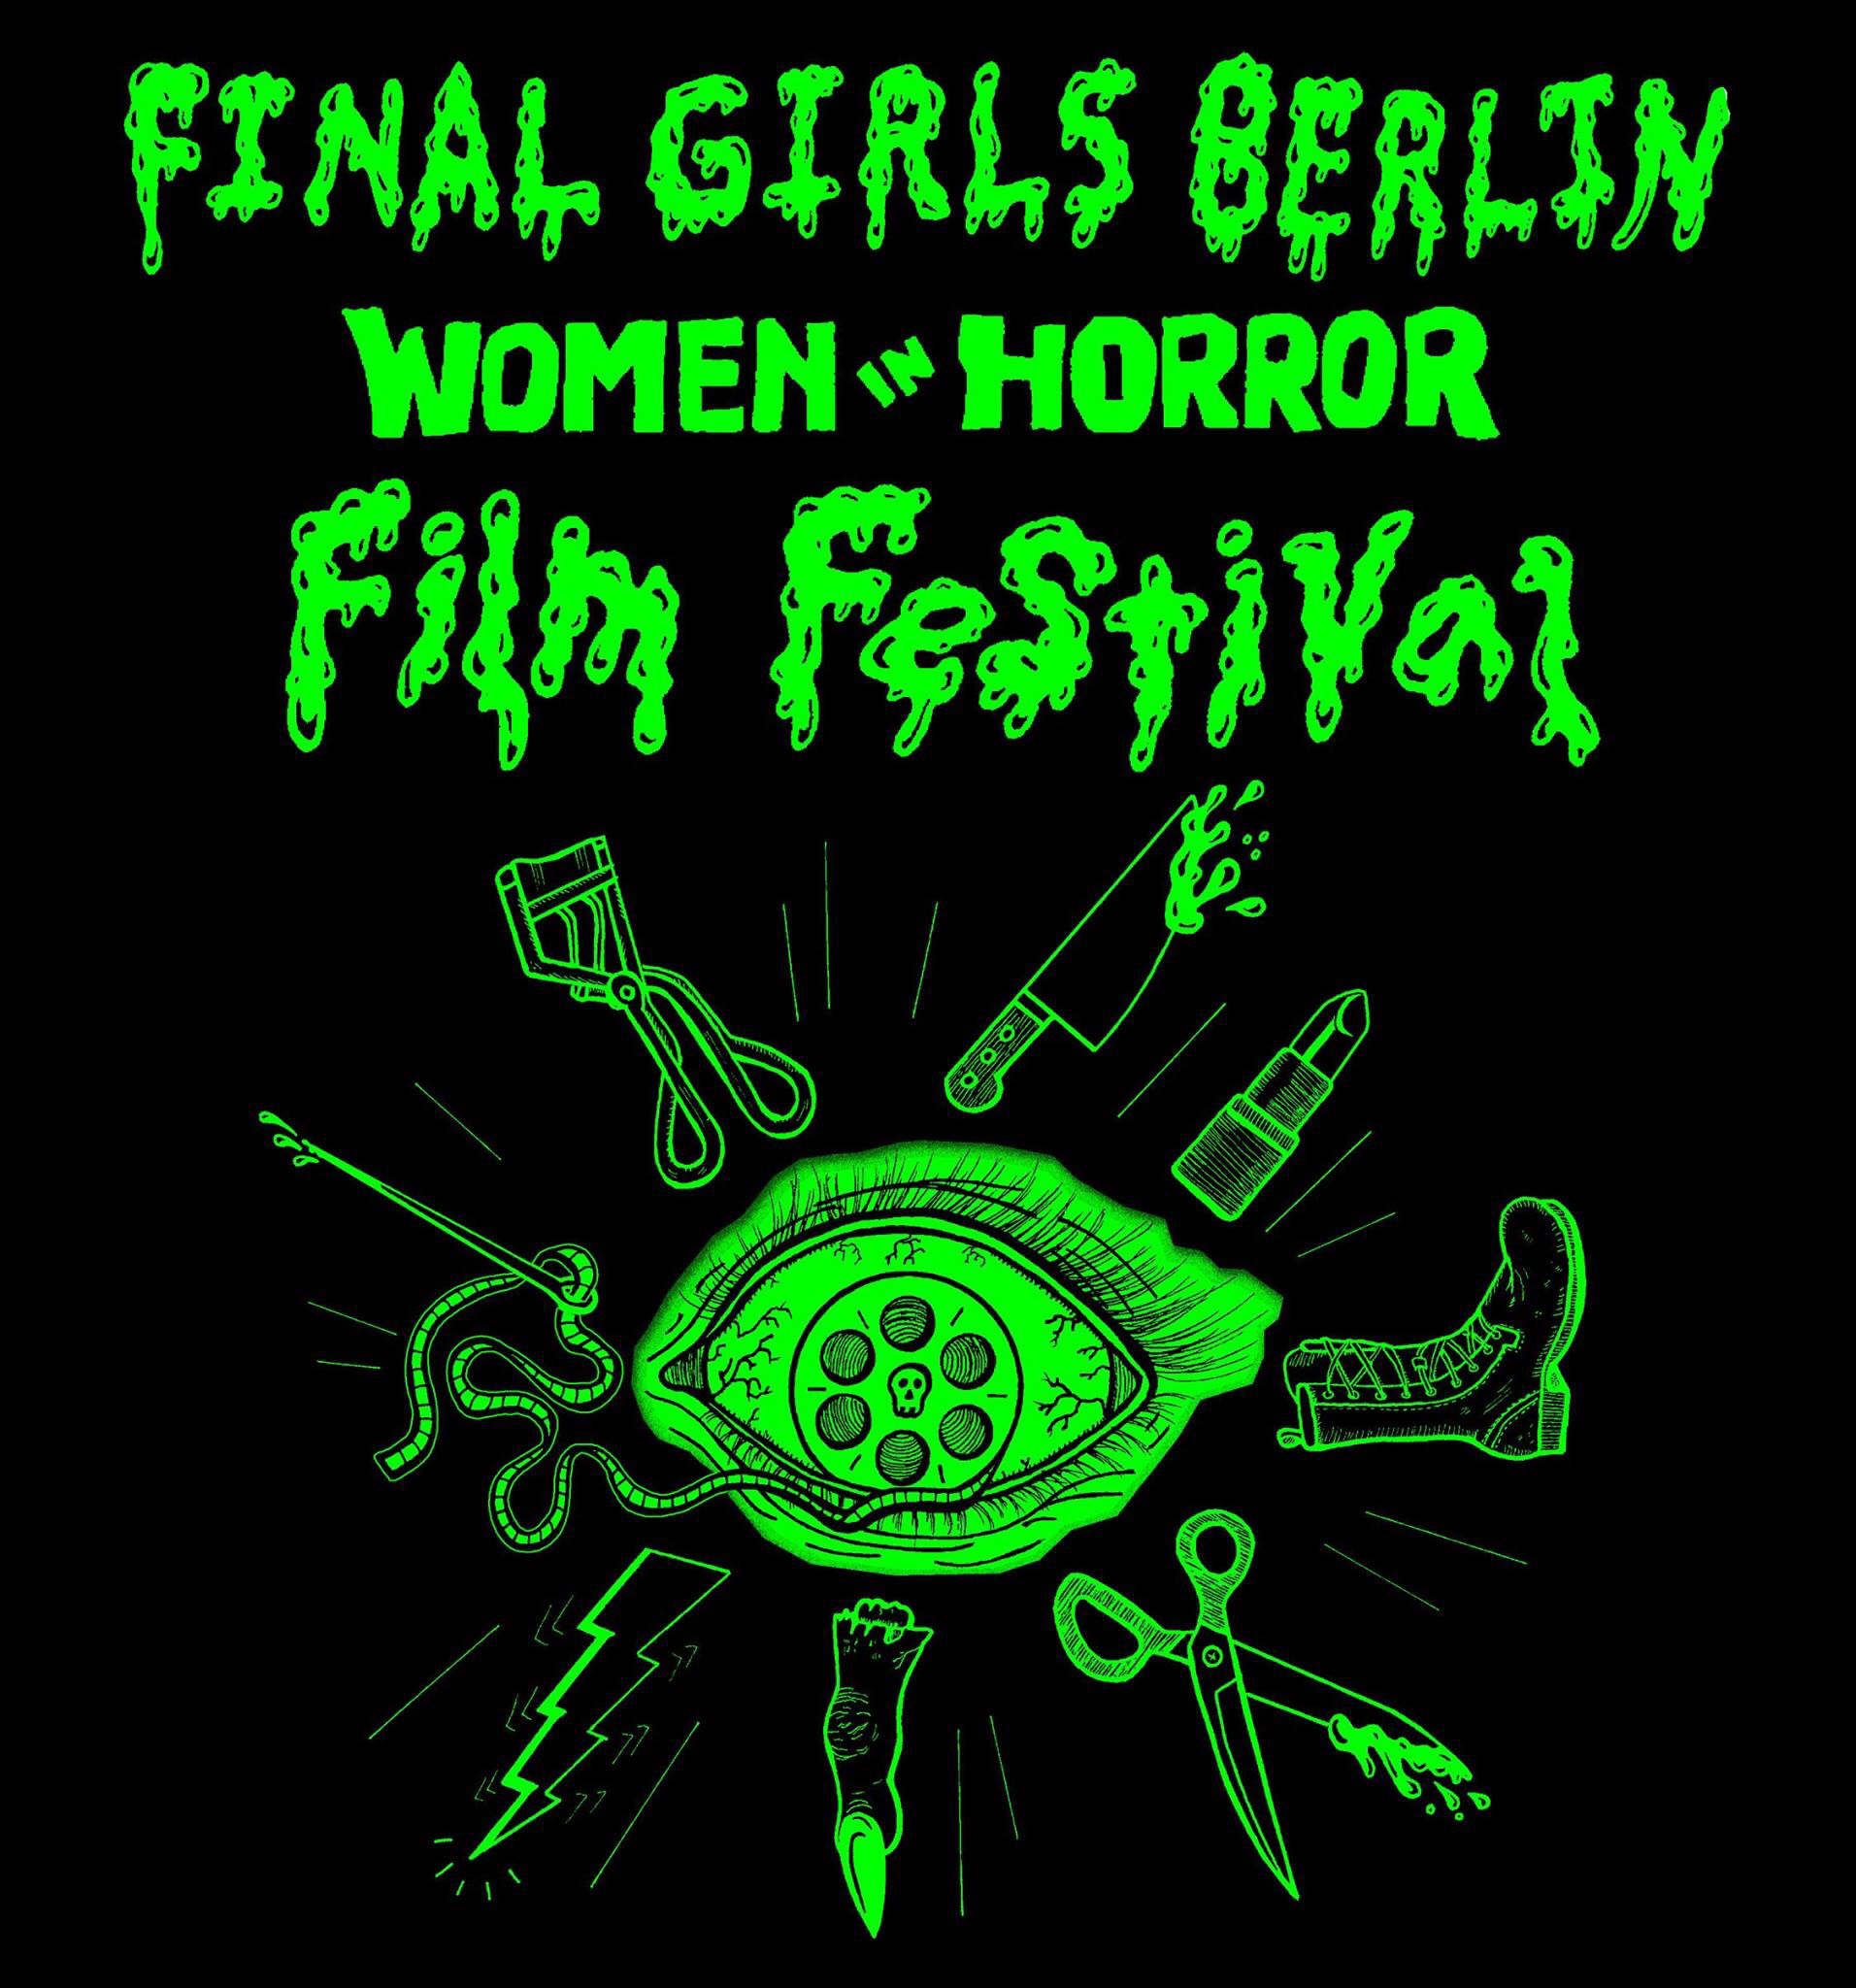 Finl Girls Berlin Film Festival